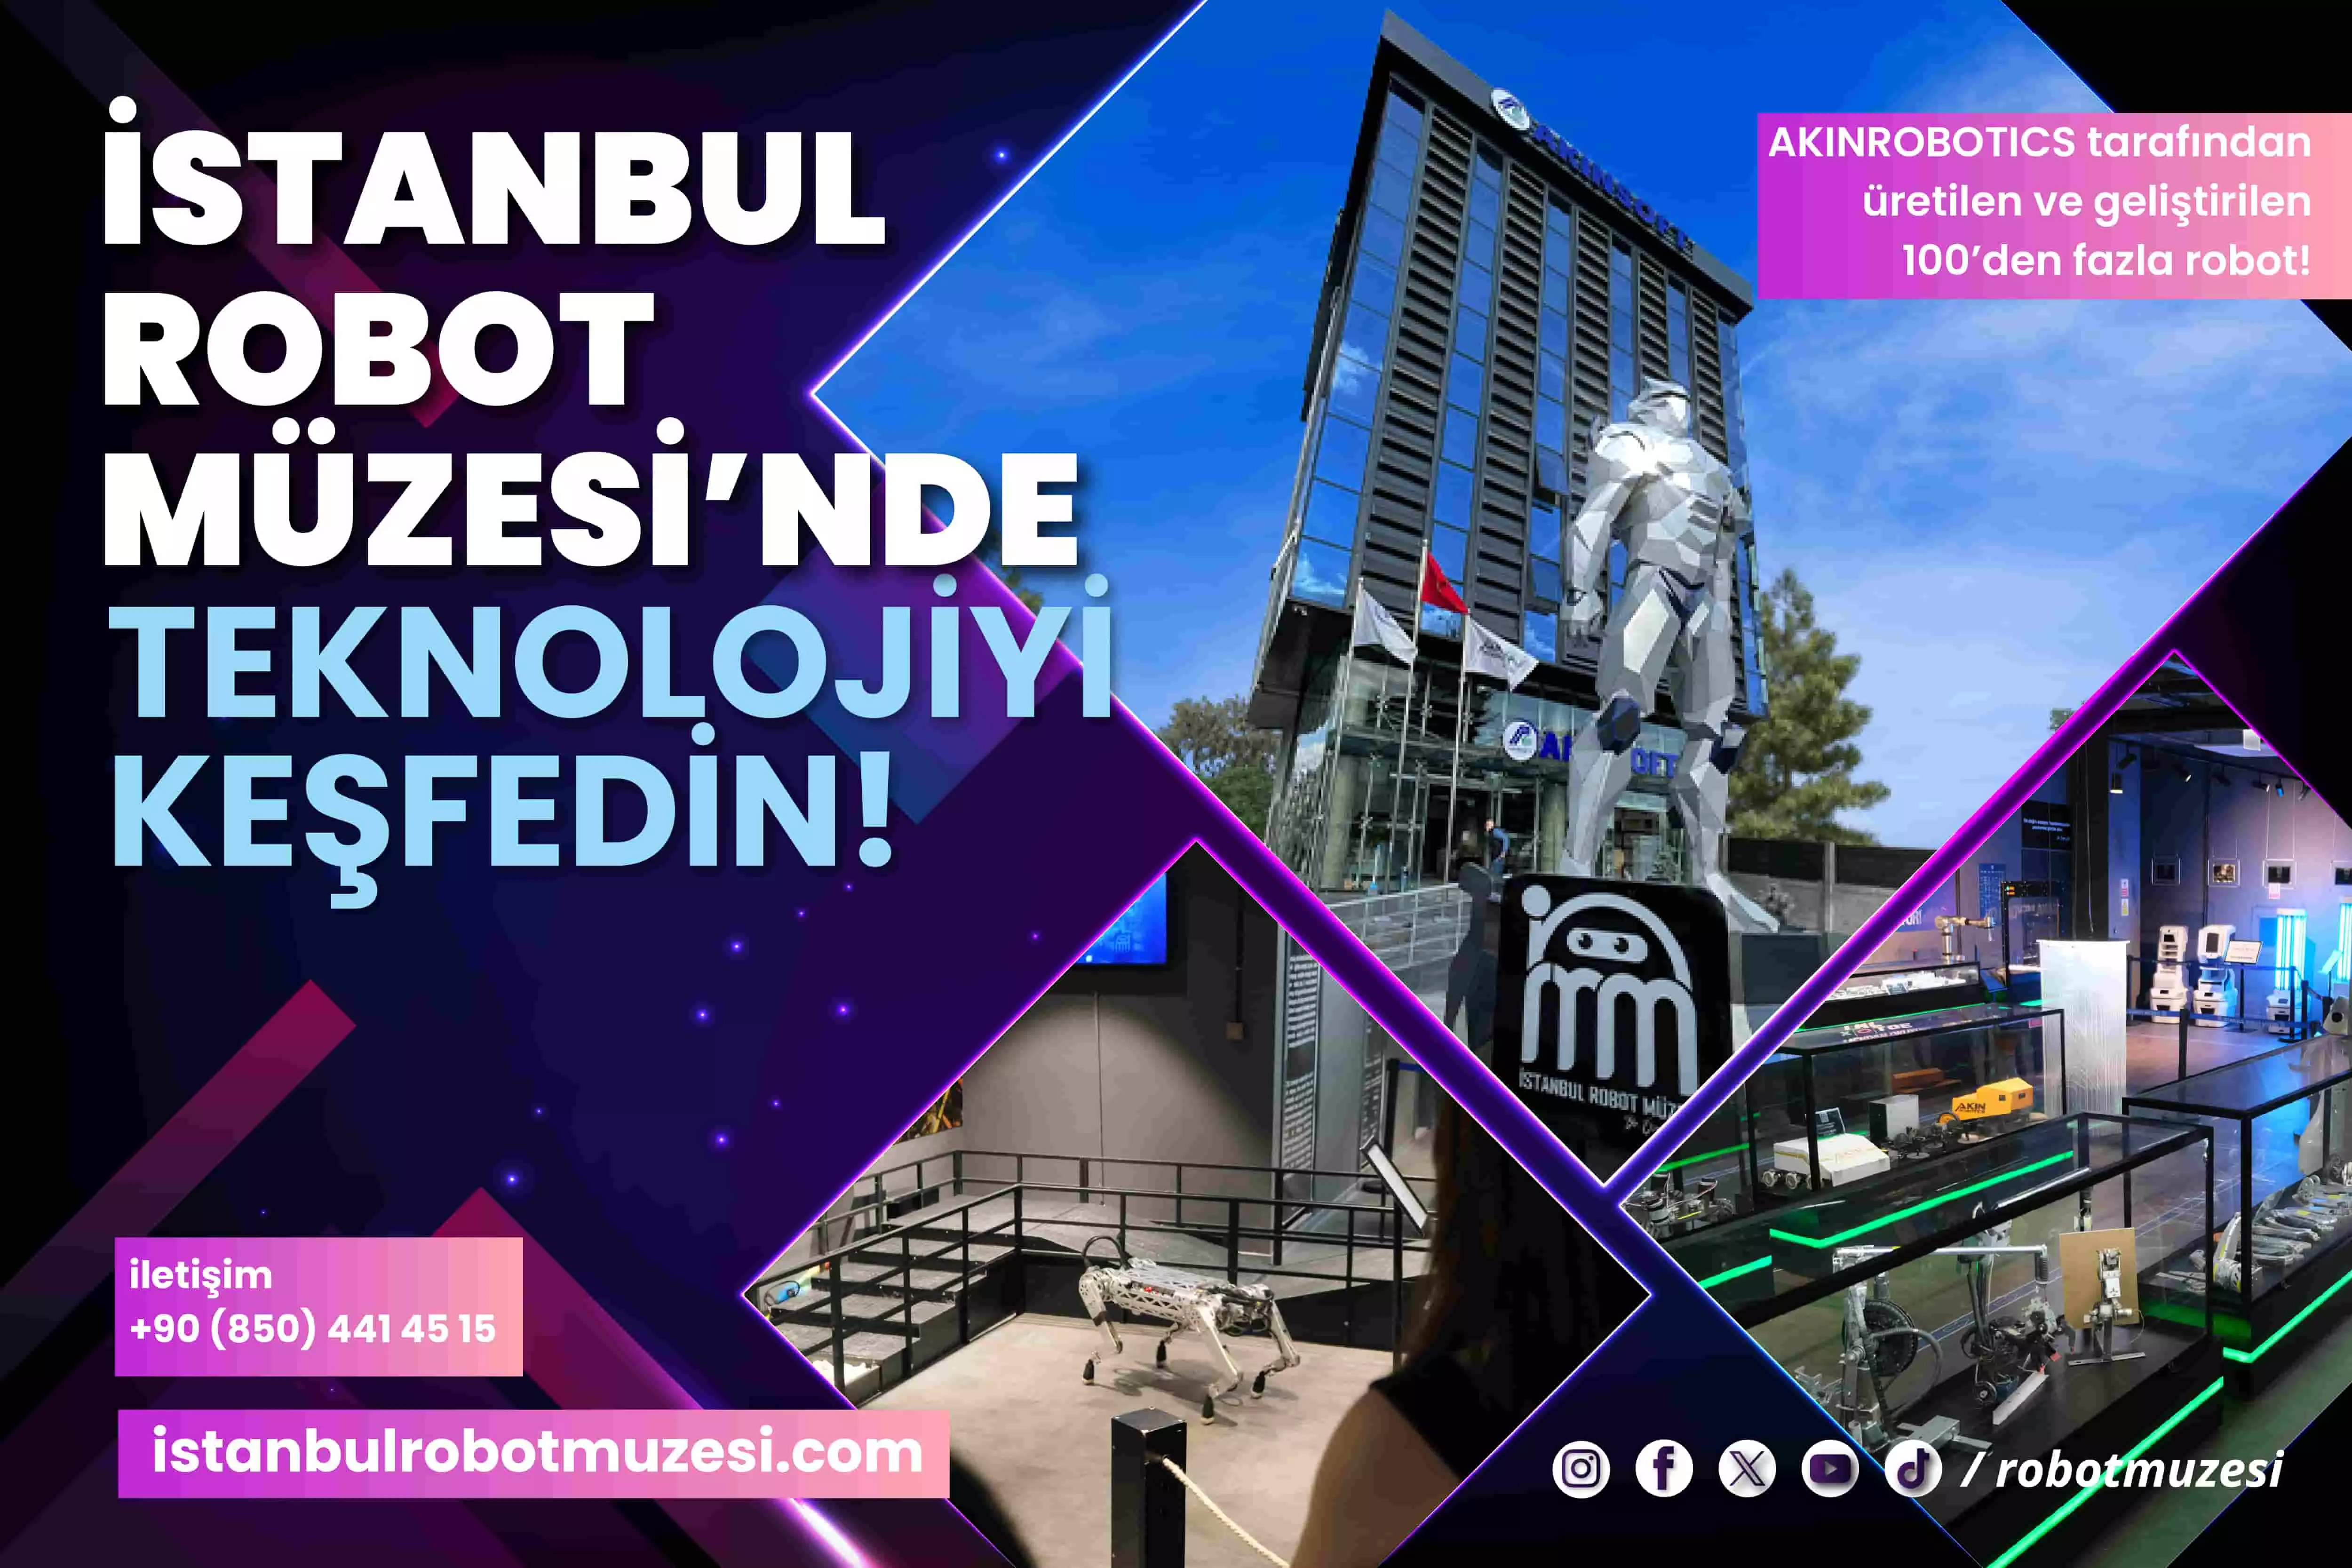 Μουσείο Ρομπότ της Κωνσταντινούπολης Εισιτήριο - 1